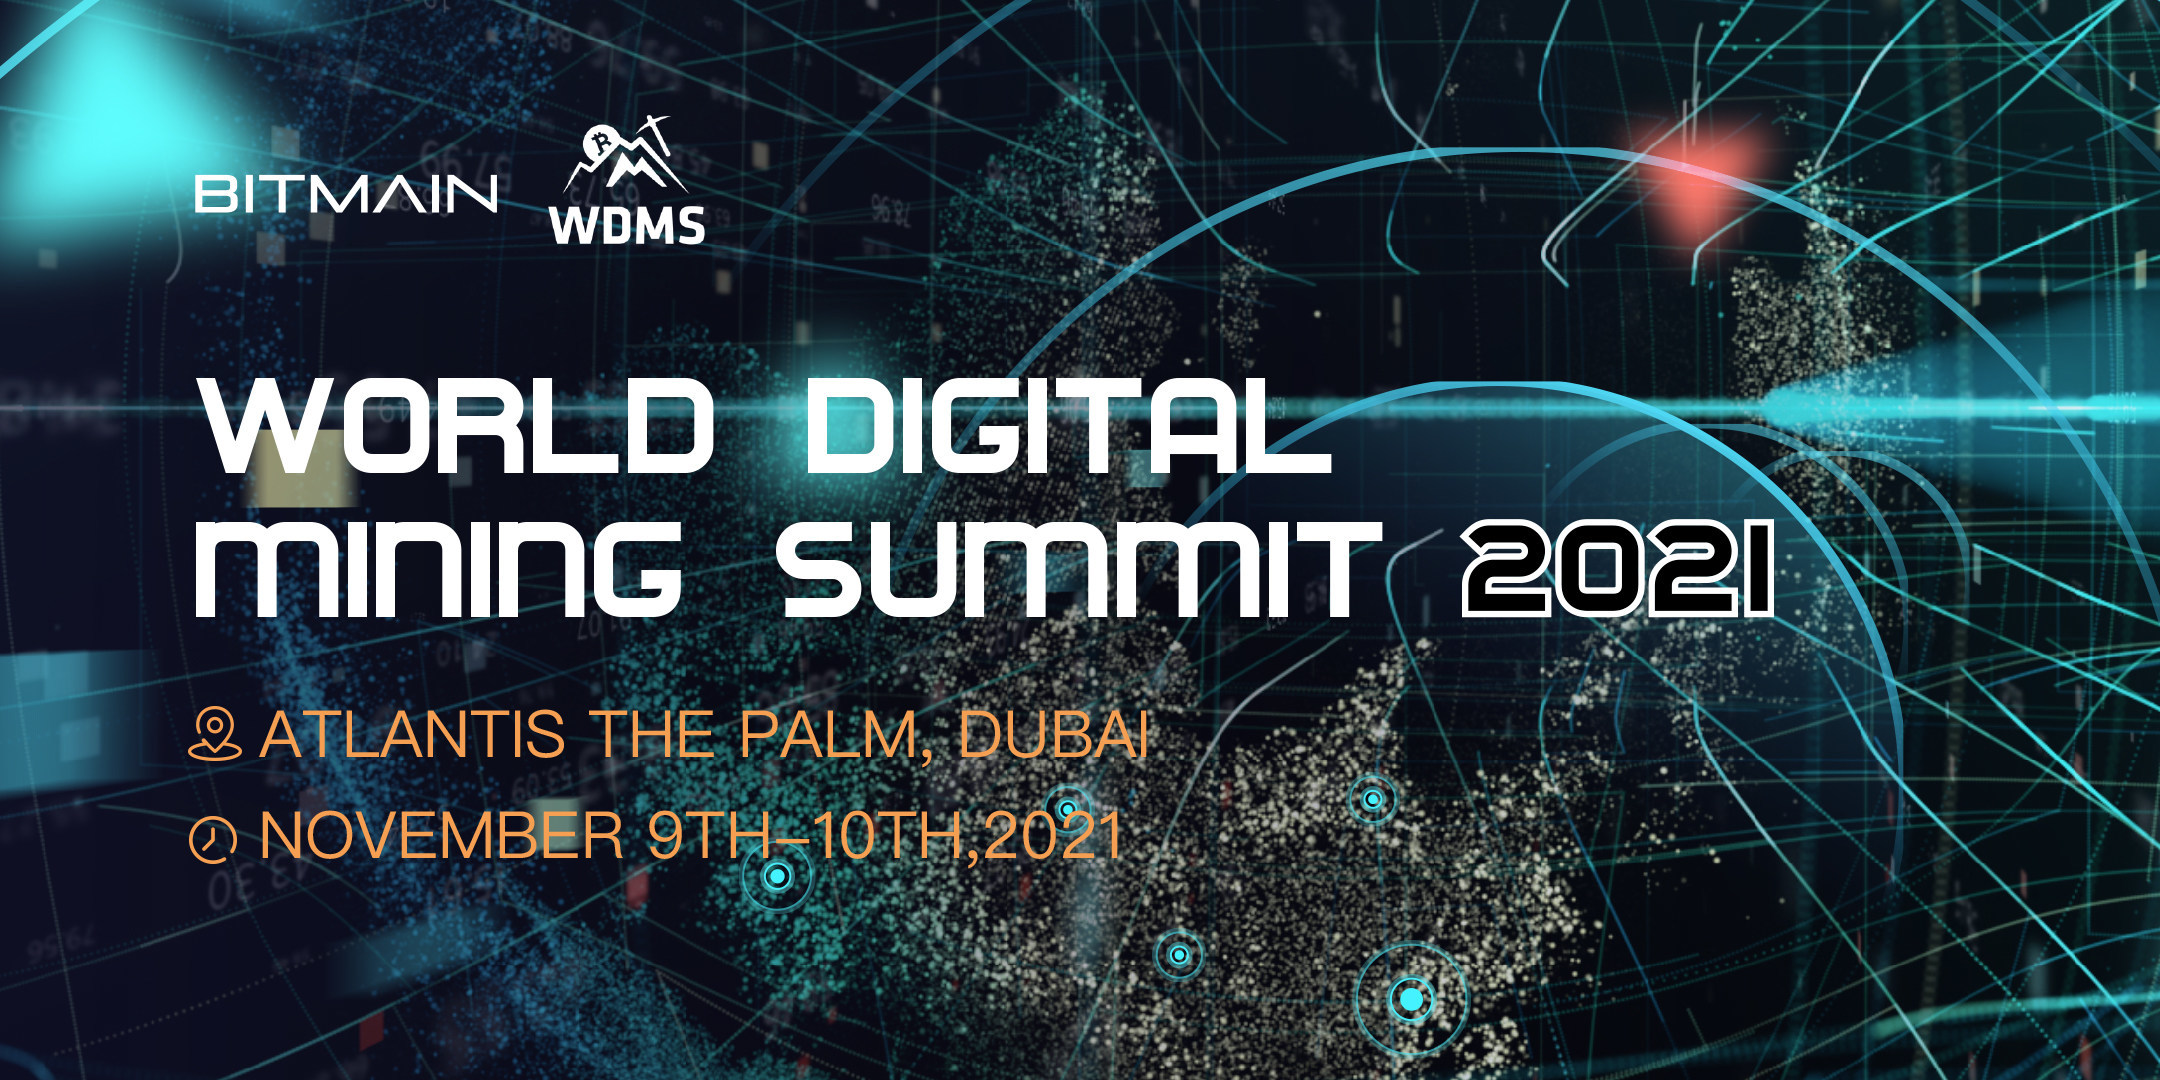  summit 2021 bitmain mining wdms digital world 